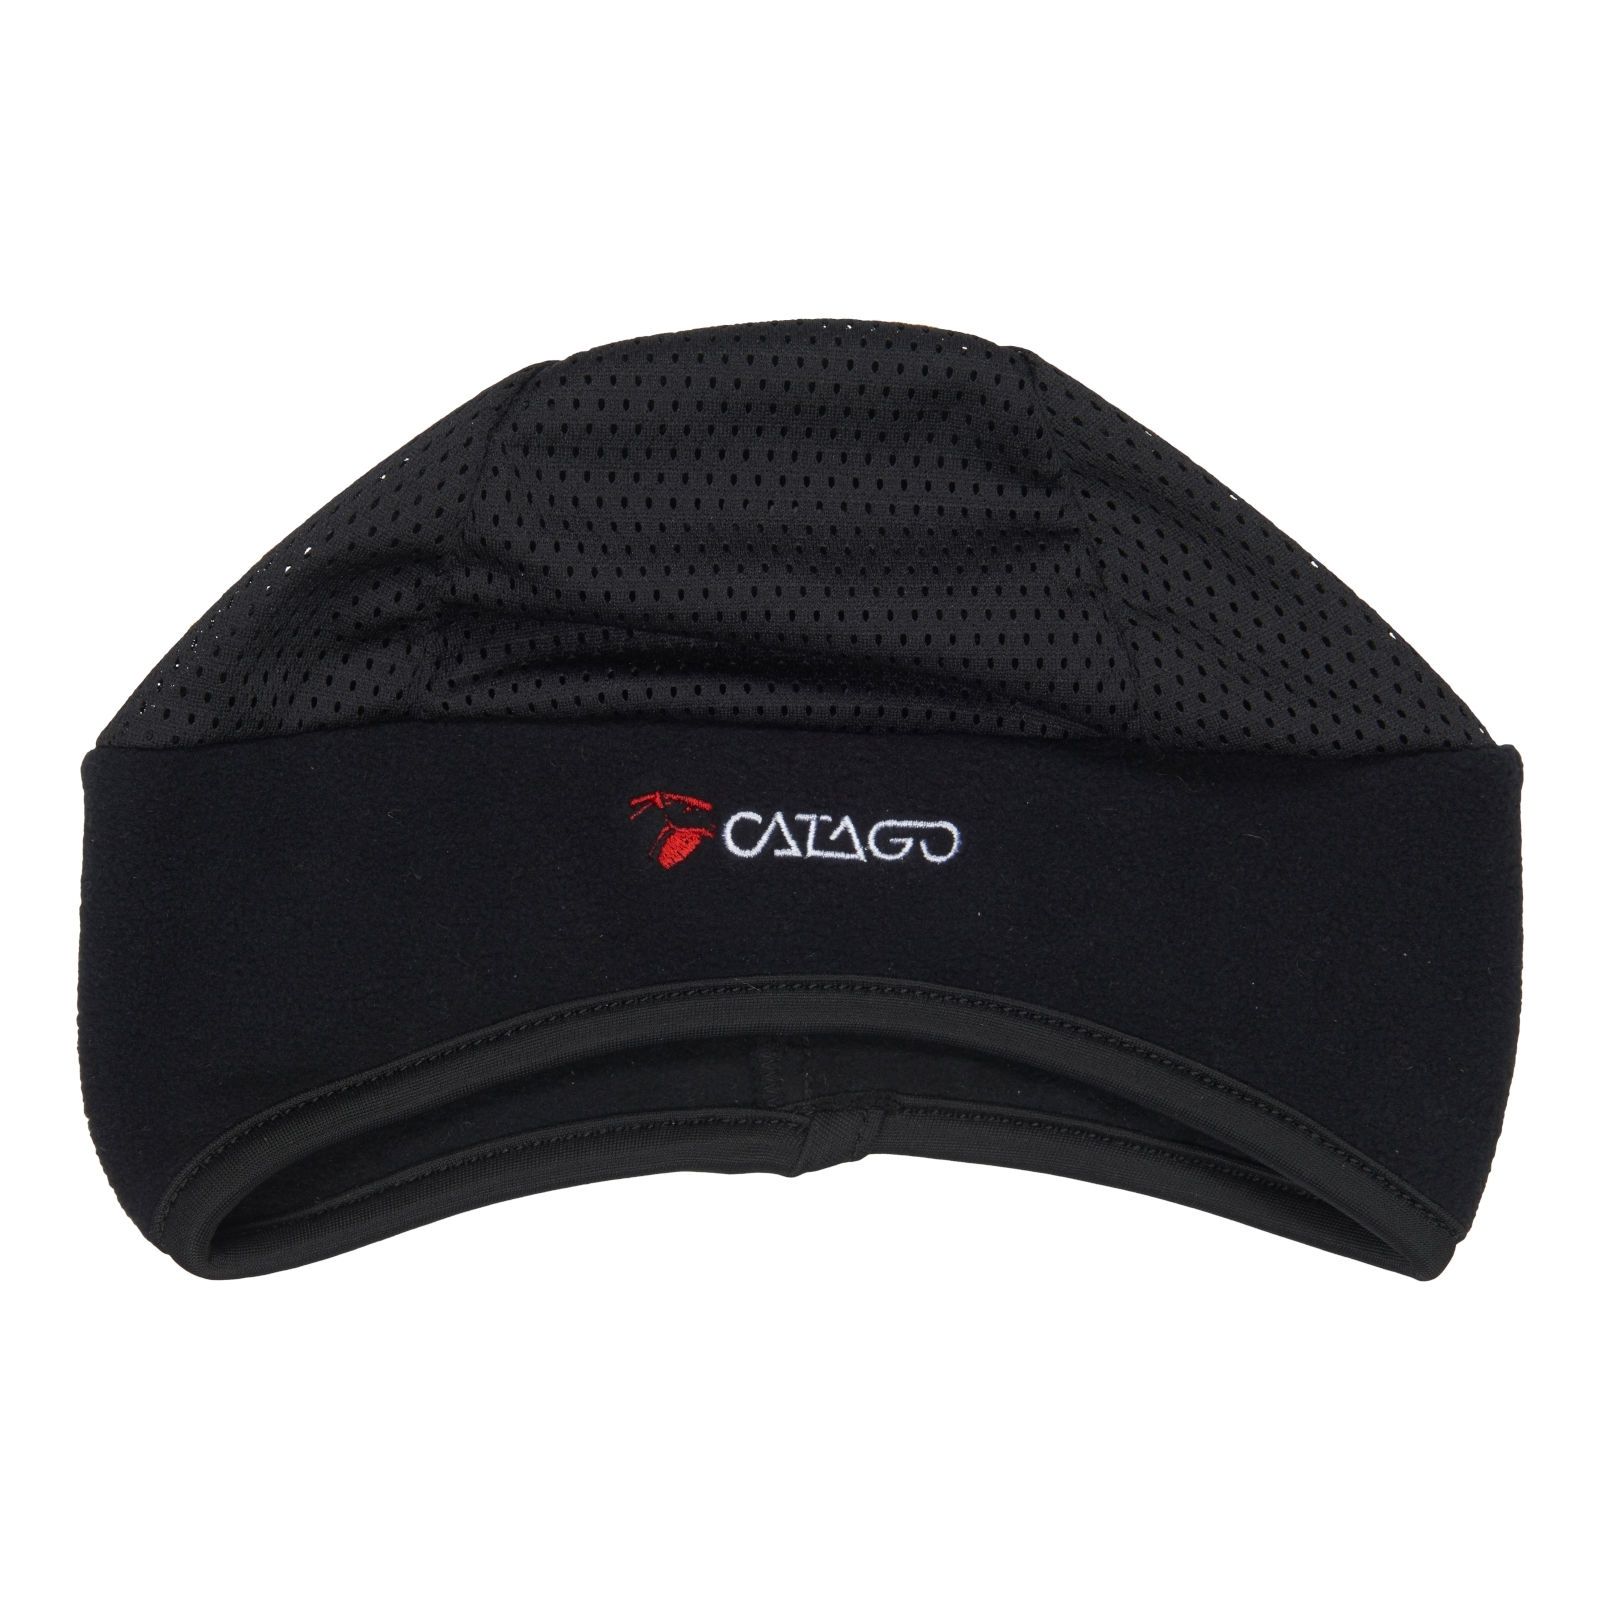 CATAGO Stirnband-Mütze FIR-Tech Healing